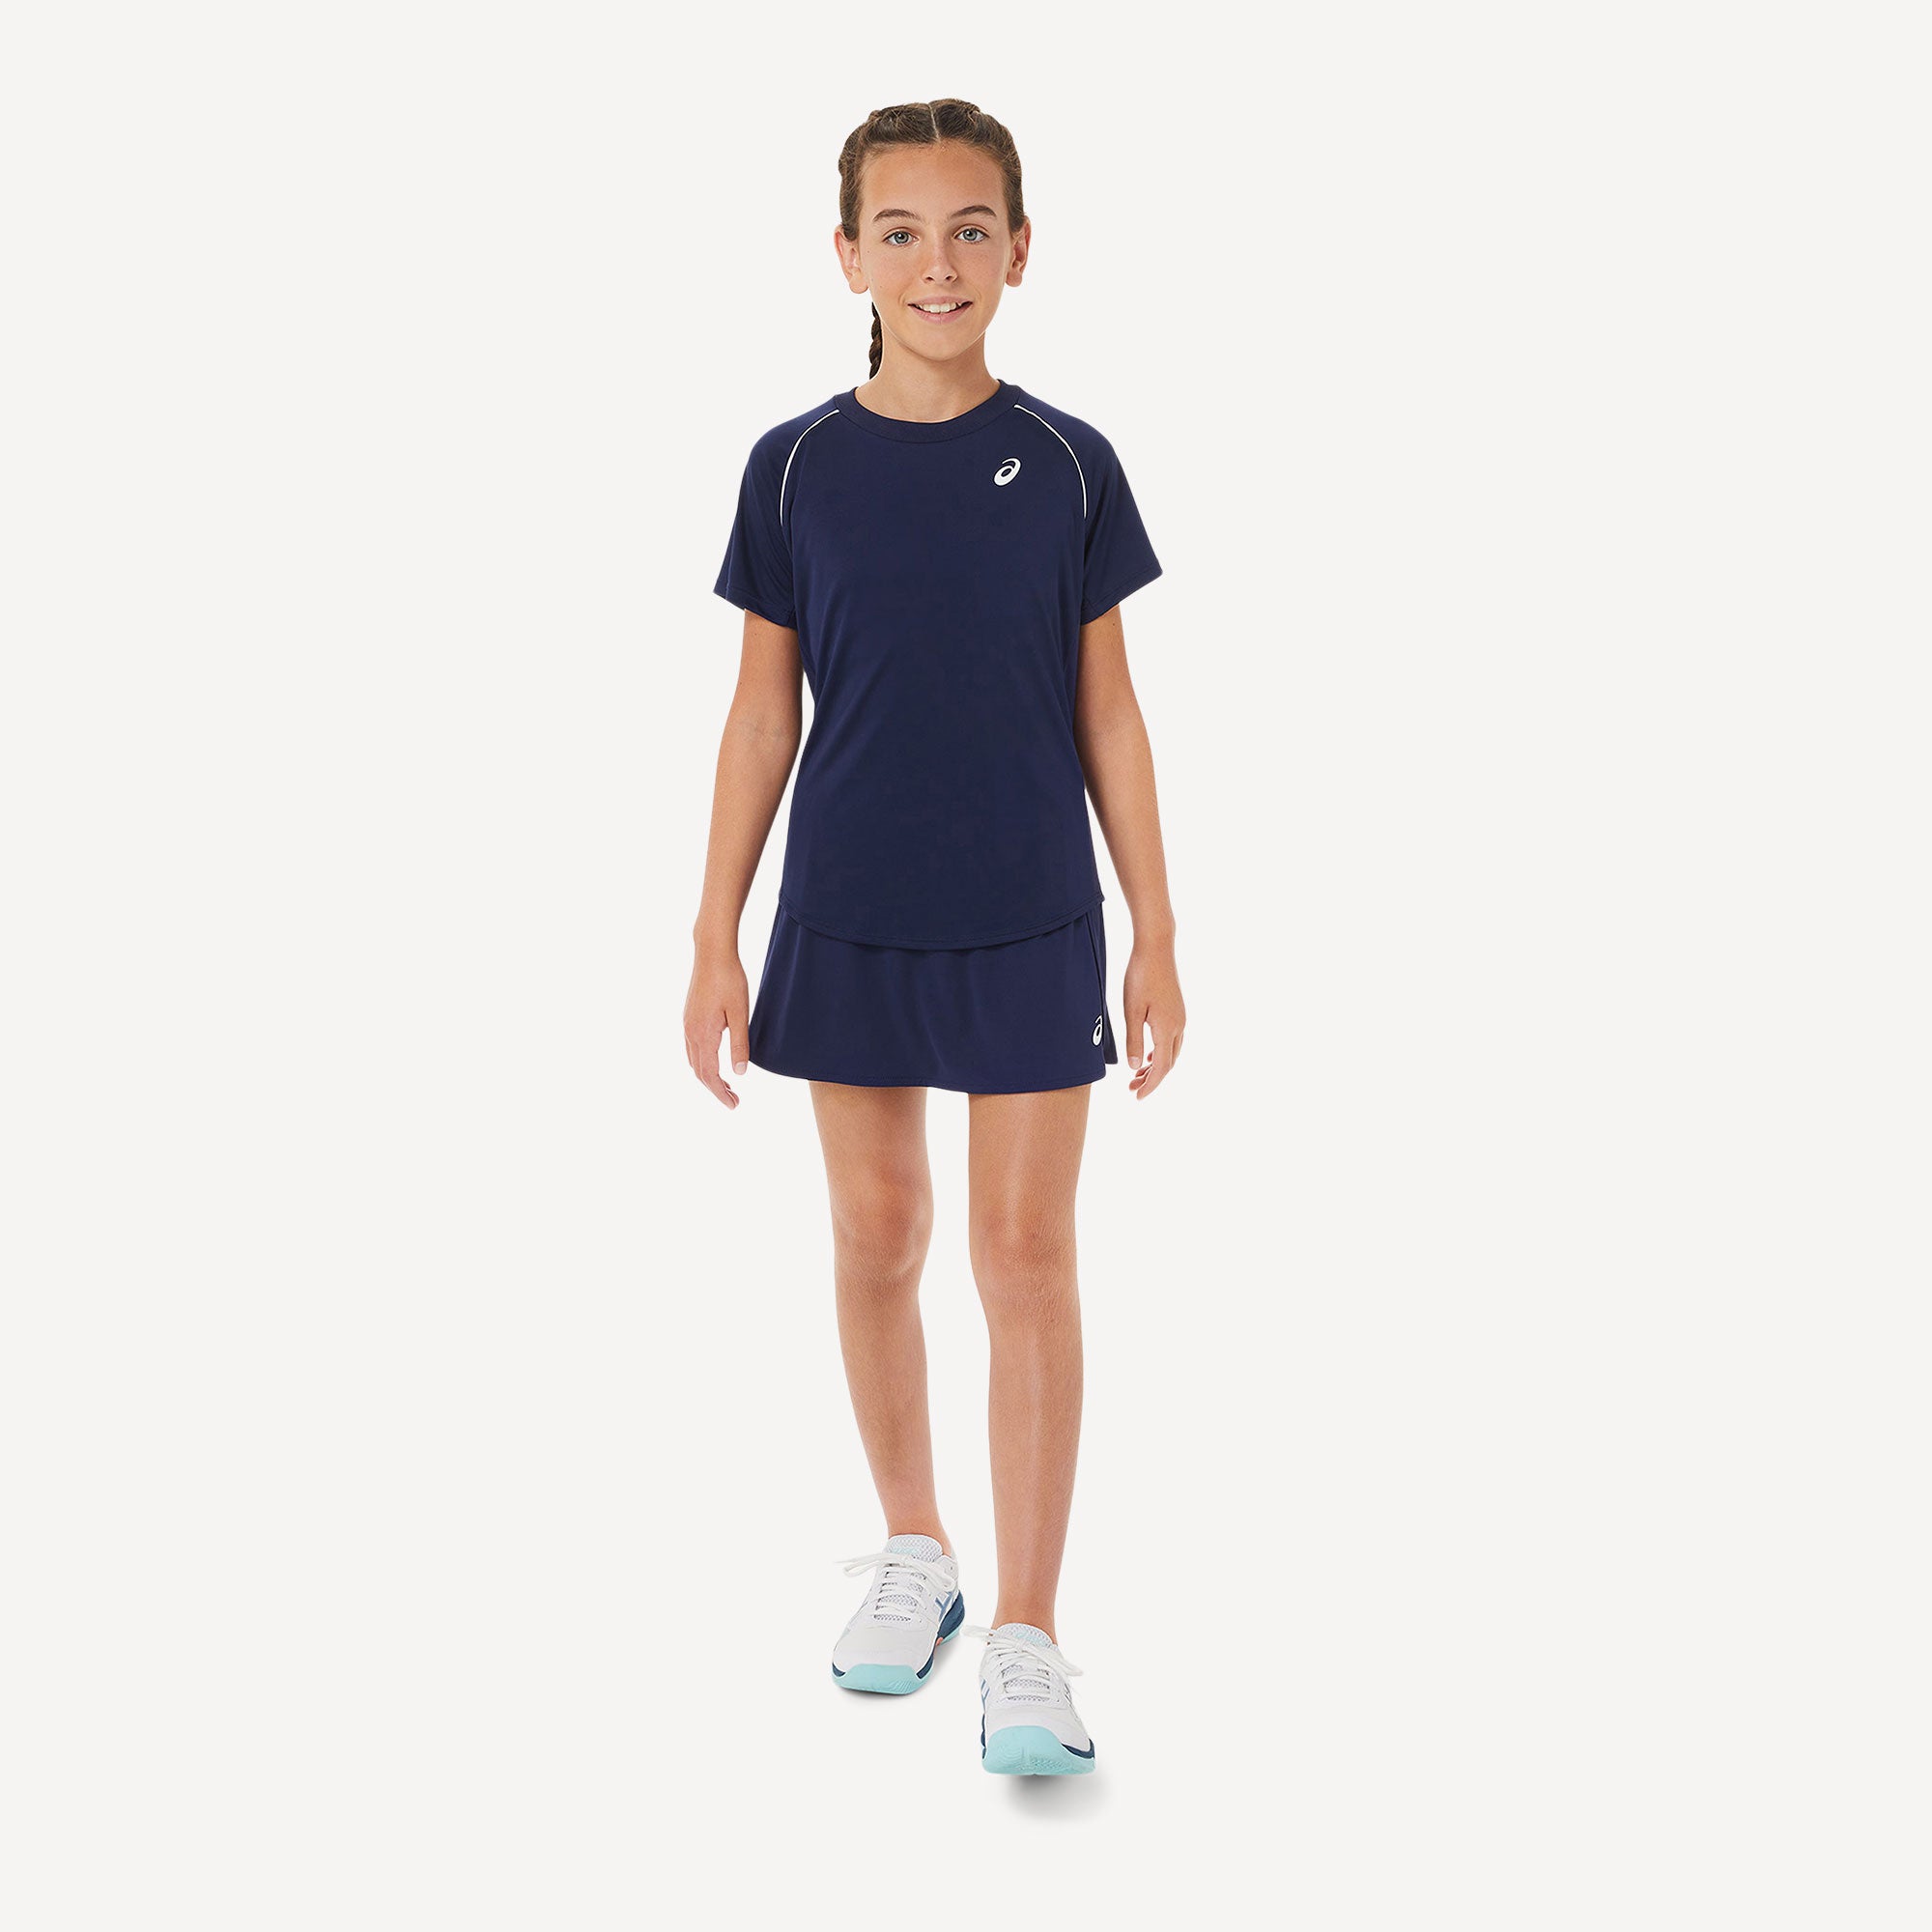 ASICS Girls' Tennis Shirt Blue (5)